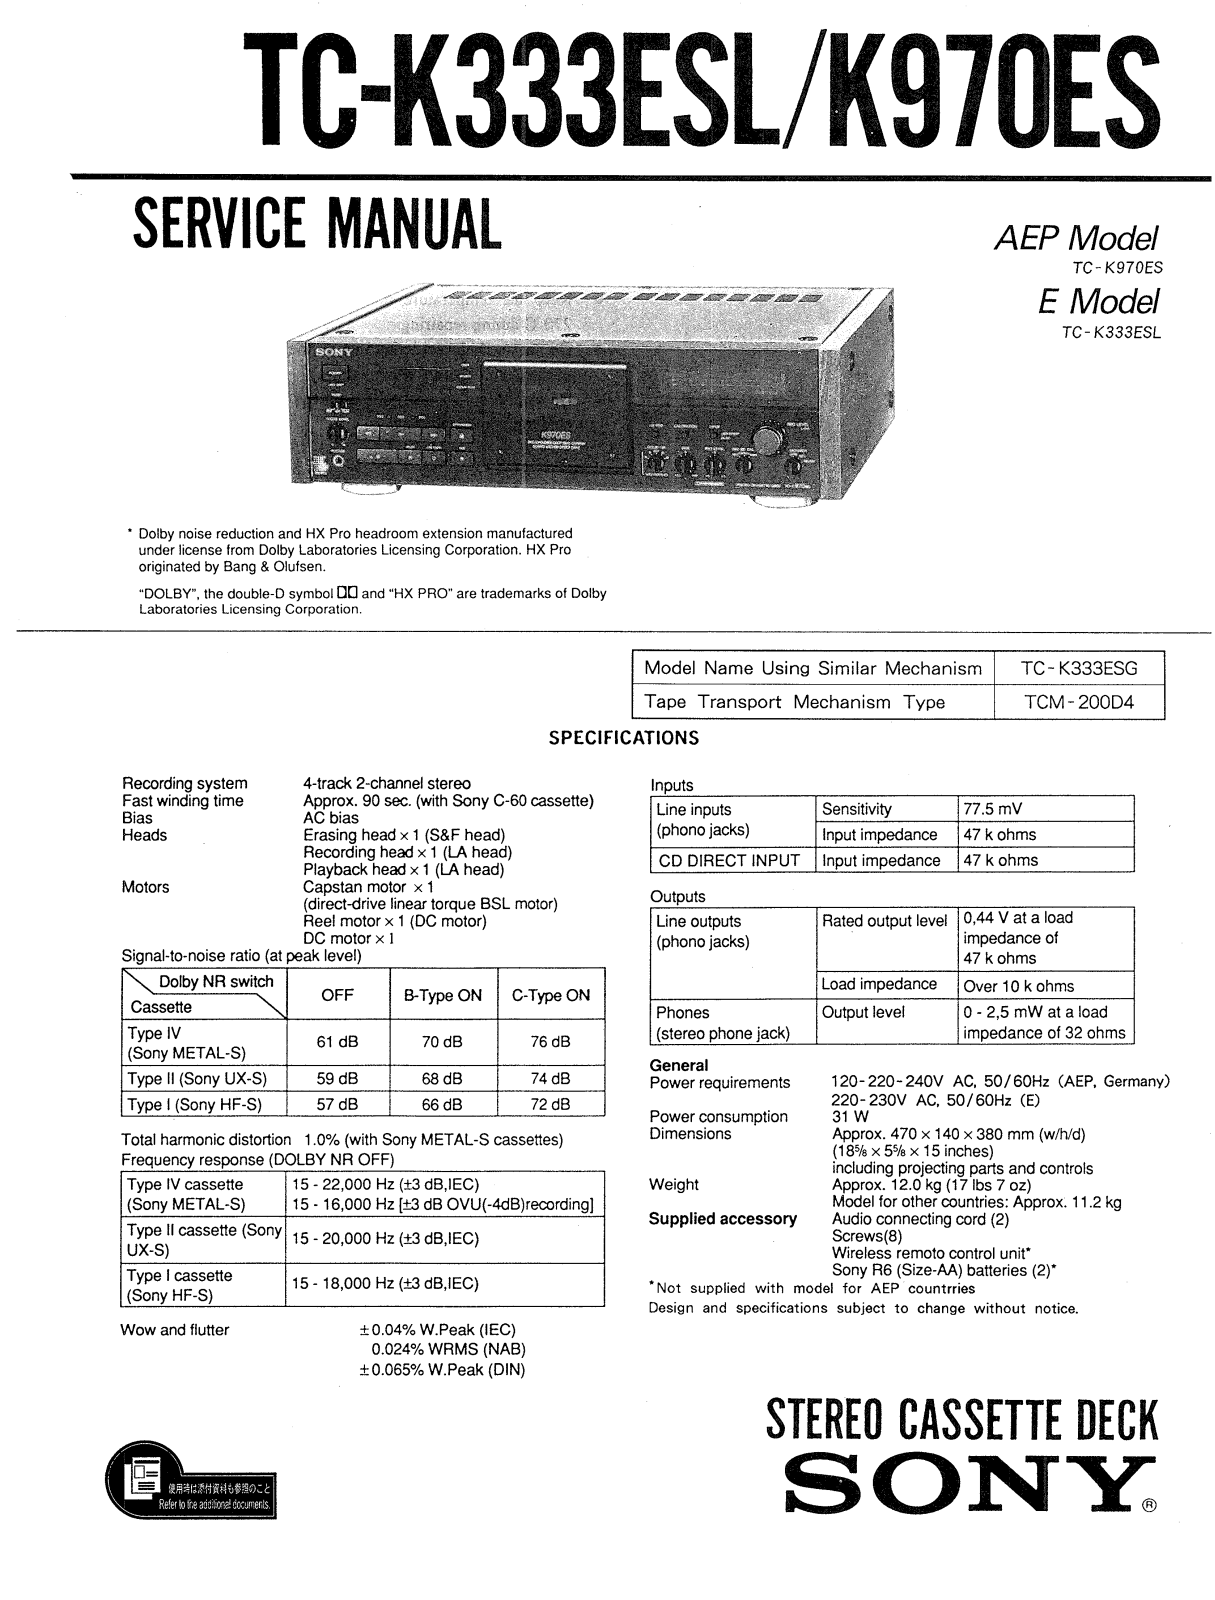 Sony TCK-970-ES Service manual